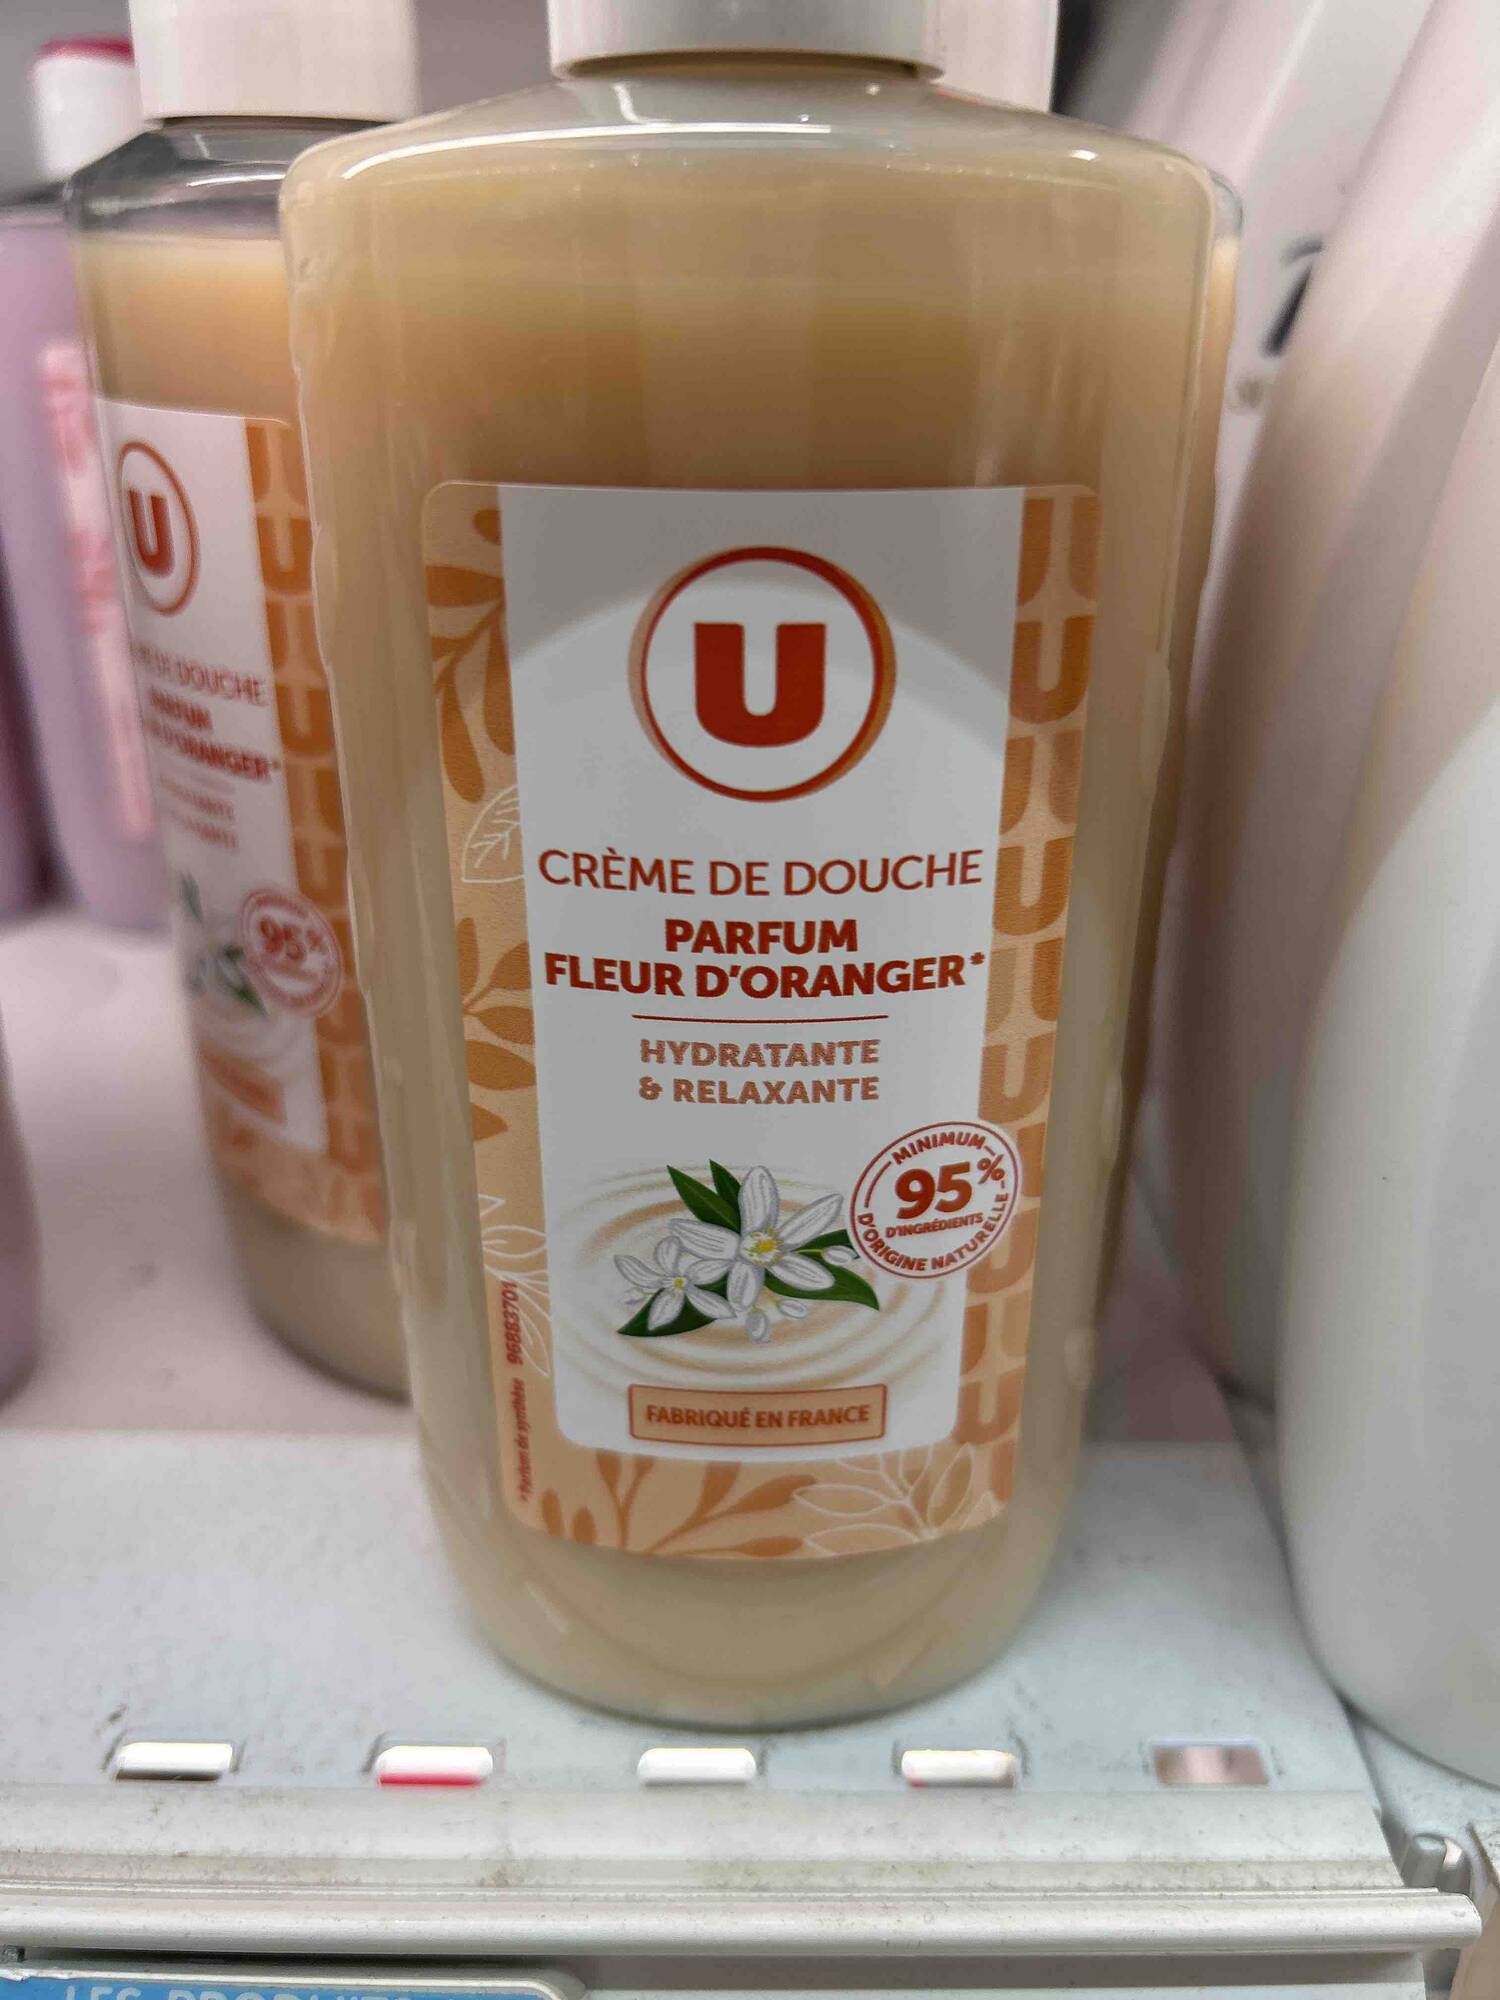 U - Crème de douche parfum fleur d'oranger